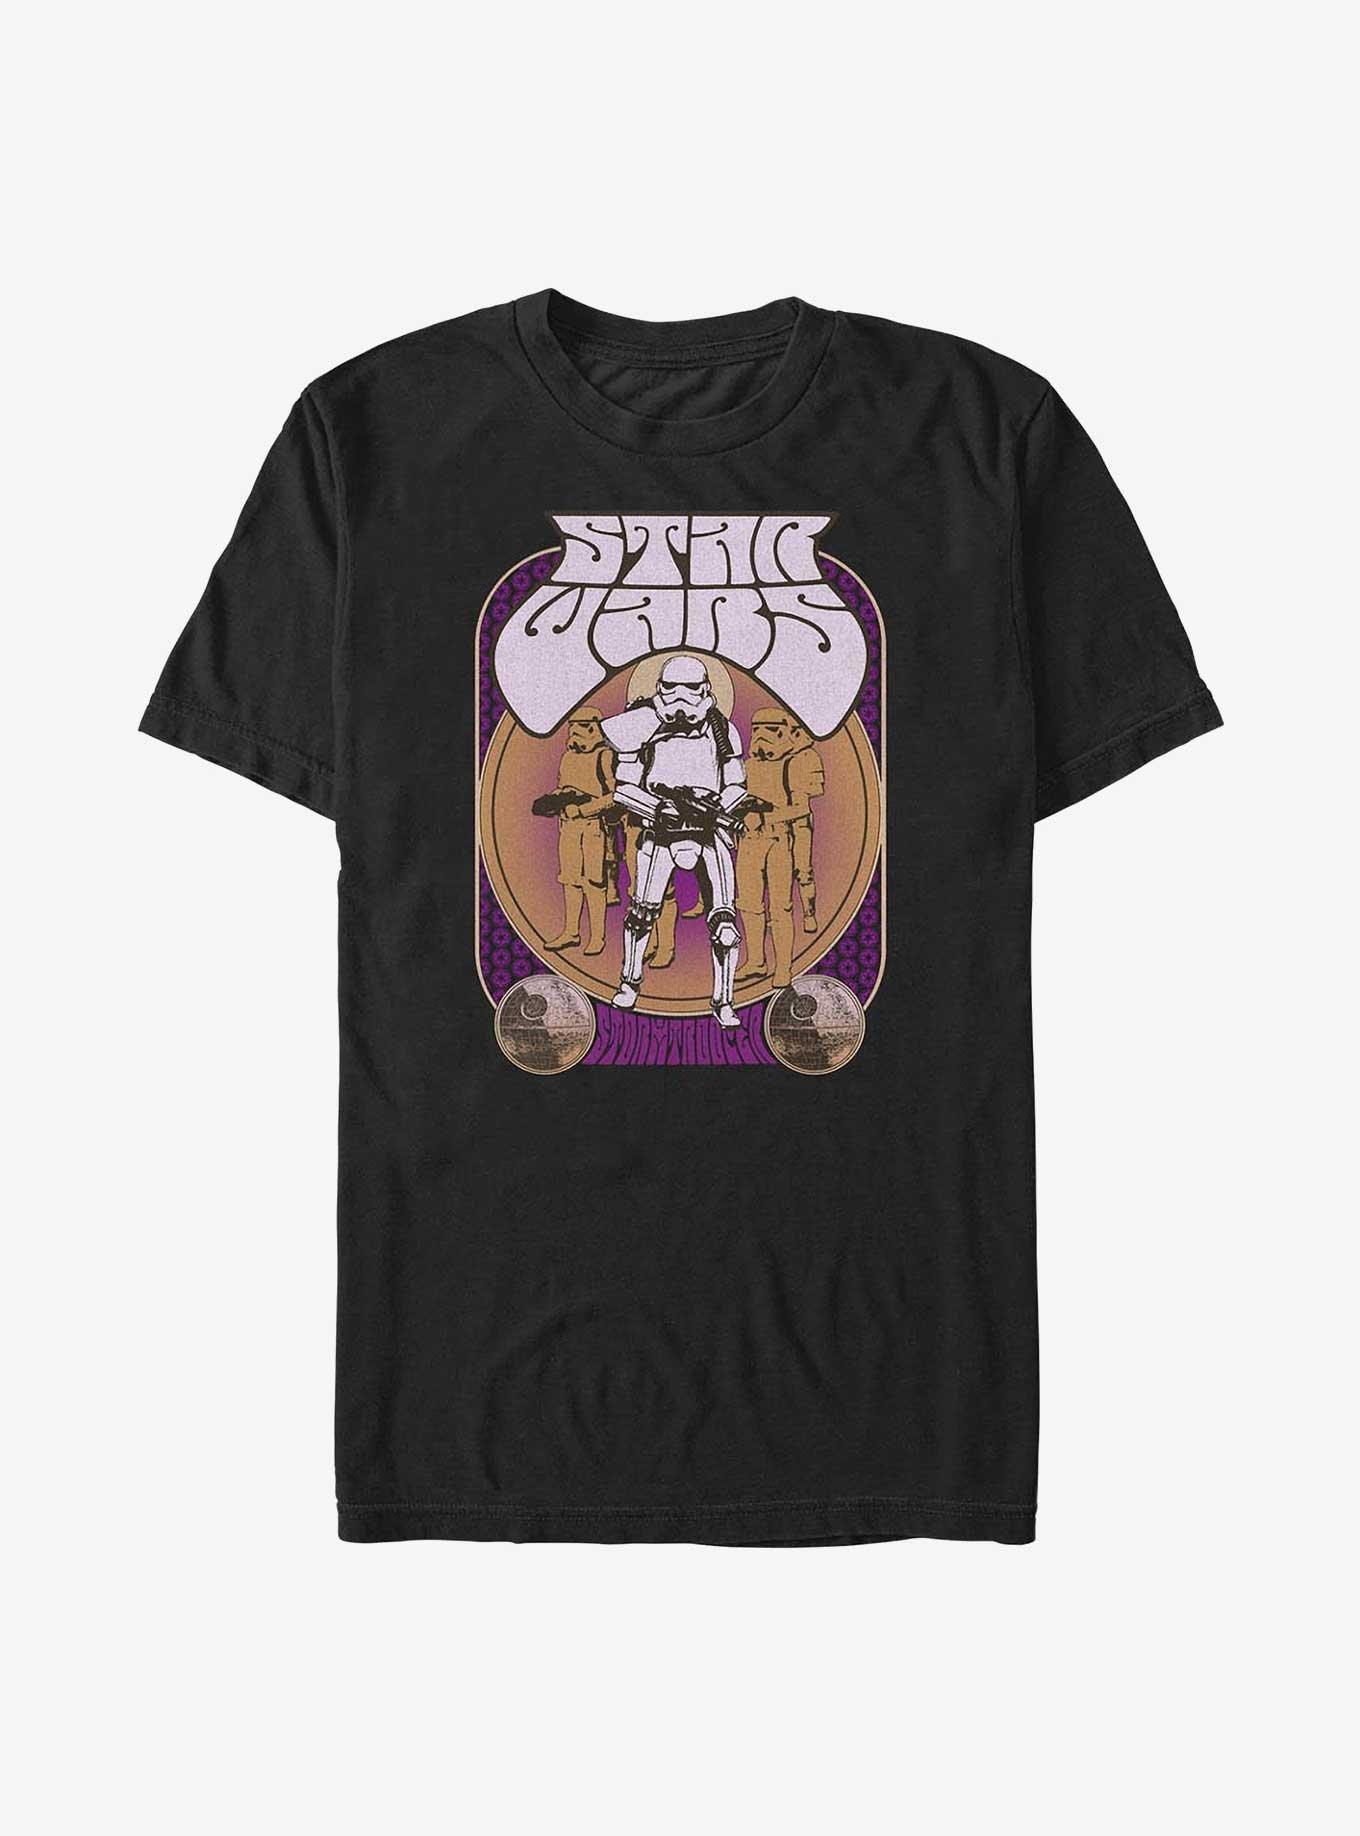 Star Wars Storm Trooper T-Shirt